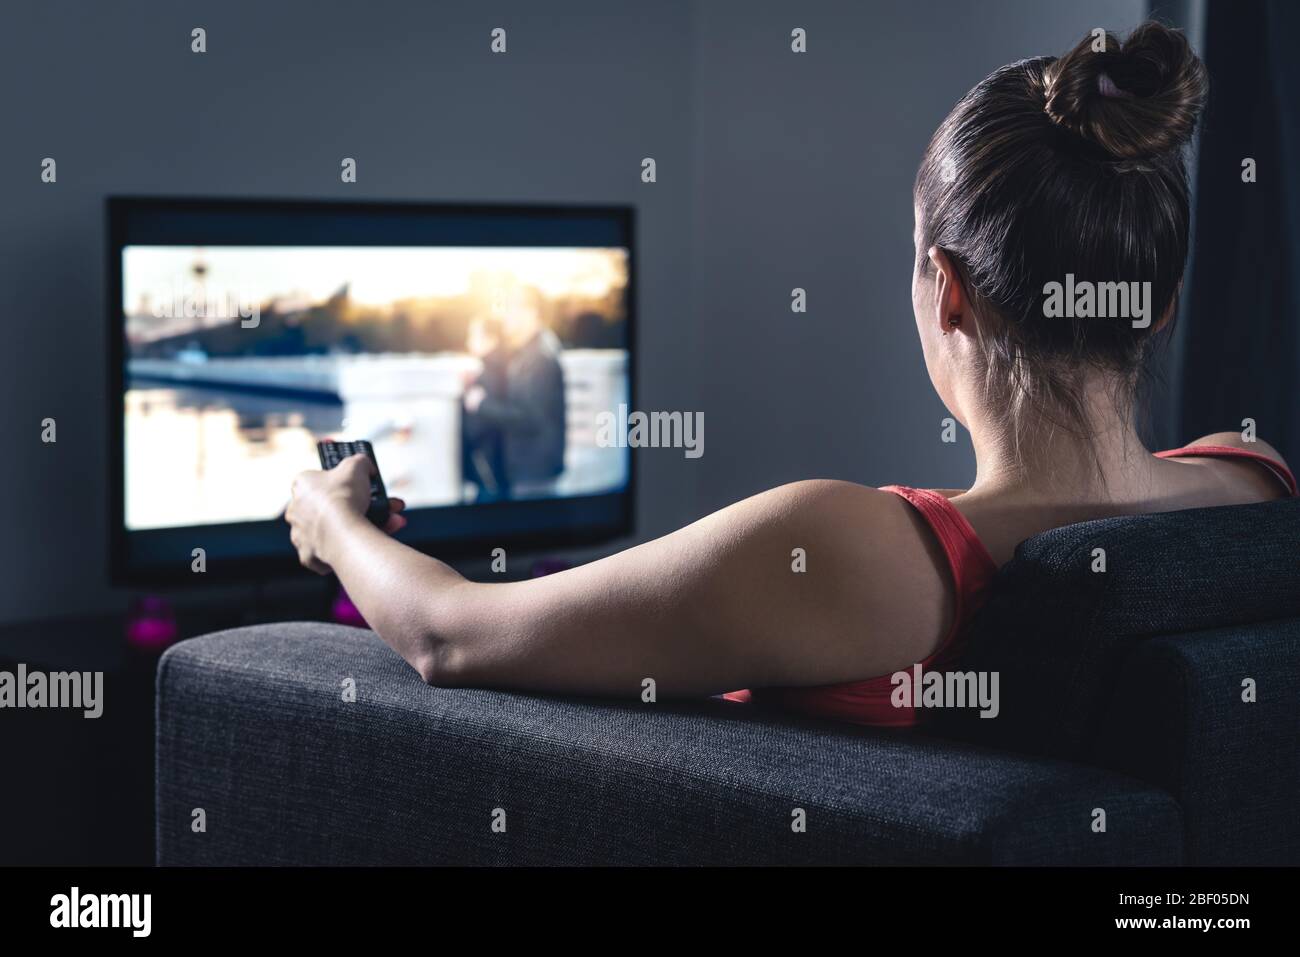 Donna che guarda film o serie. Persona che utilizza il telecomando Smart tv per scegliere un film o cambiare canale. Streaming o video on demand (VOD). Foto Stock